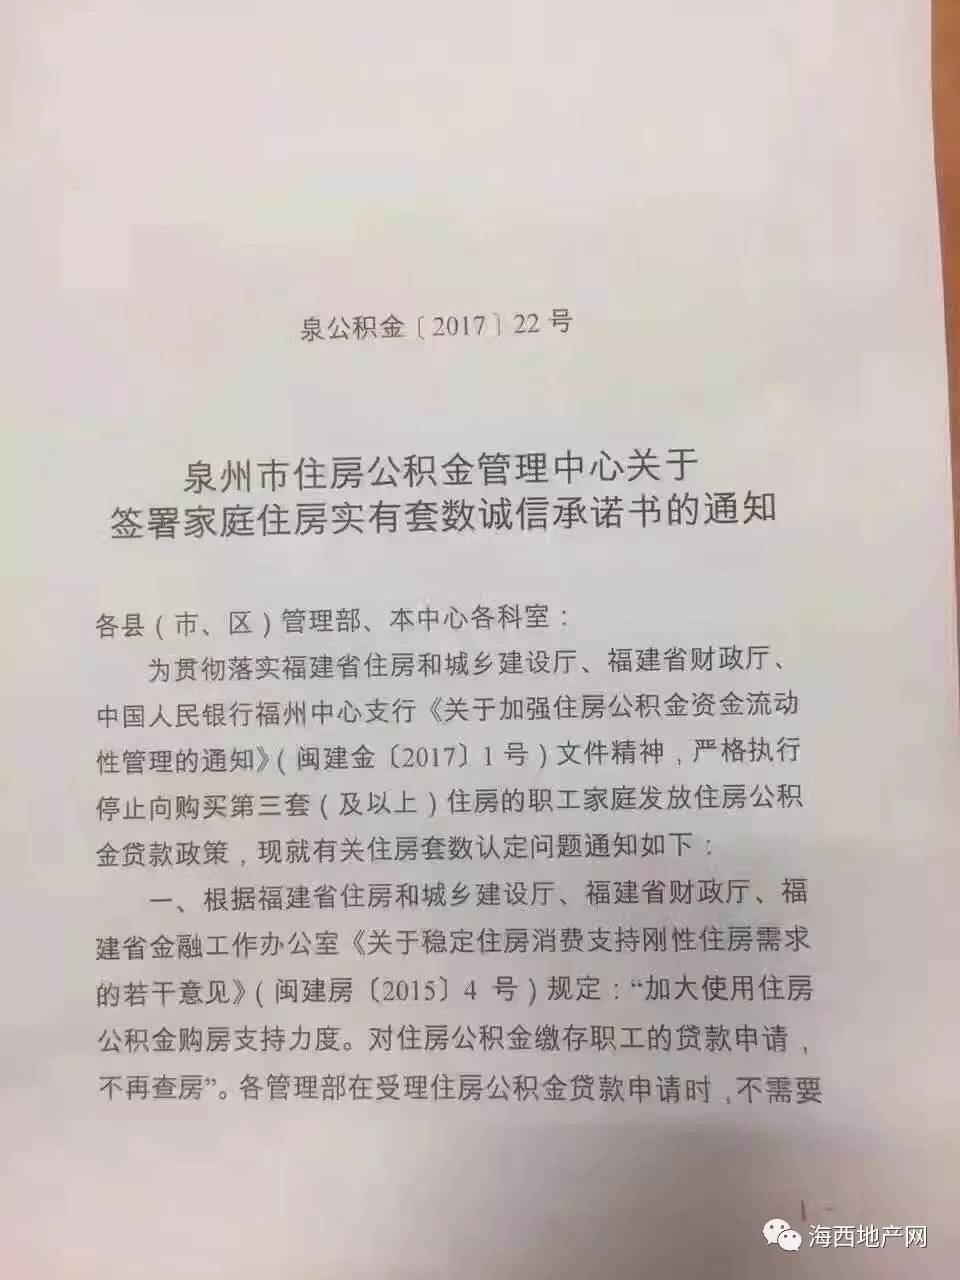 啥情况?上海买房要公证摇号,泉州5月4日起买房